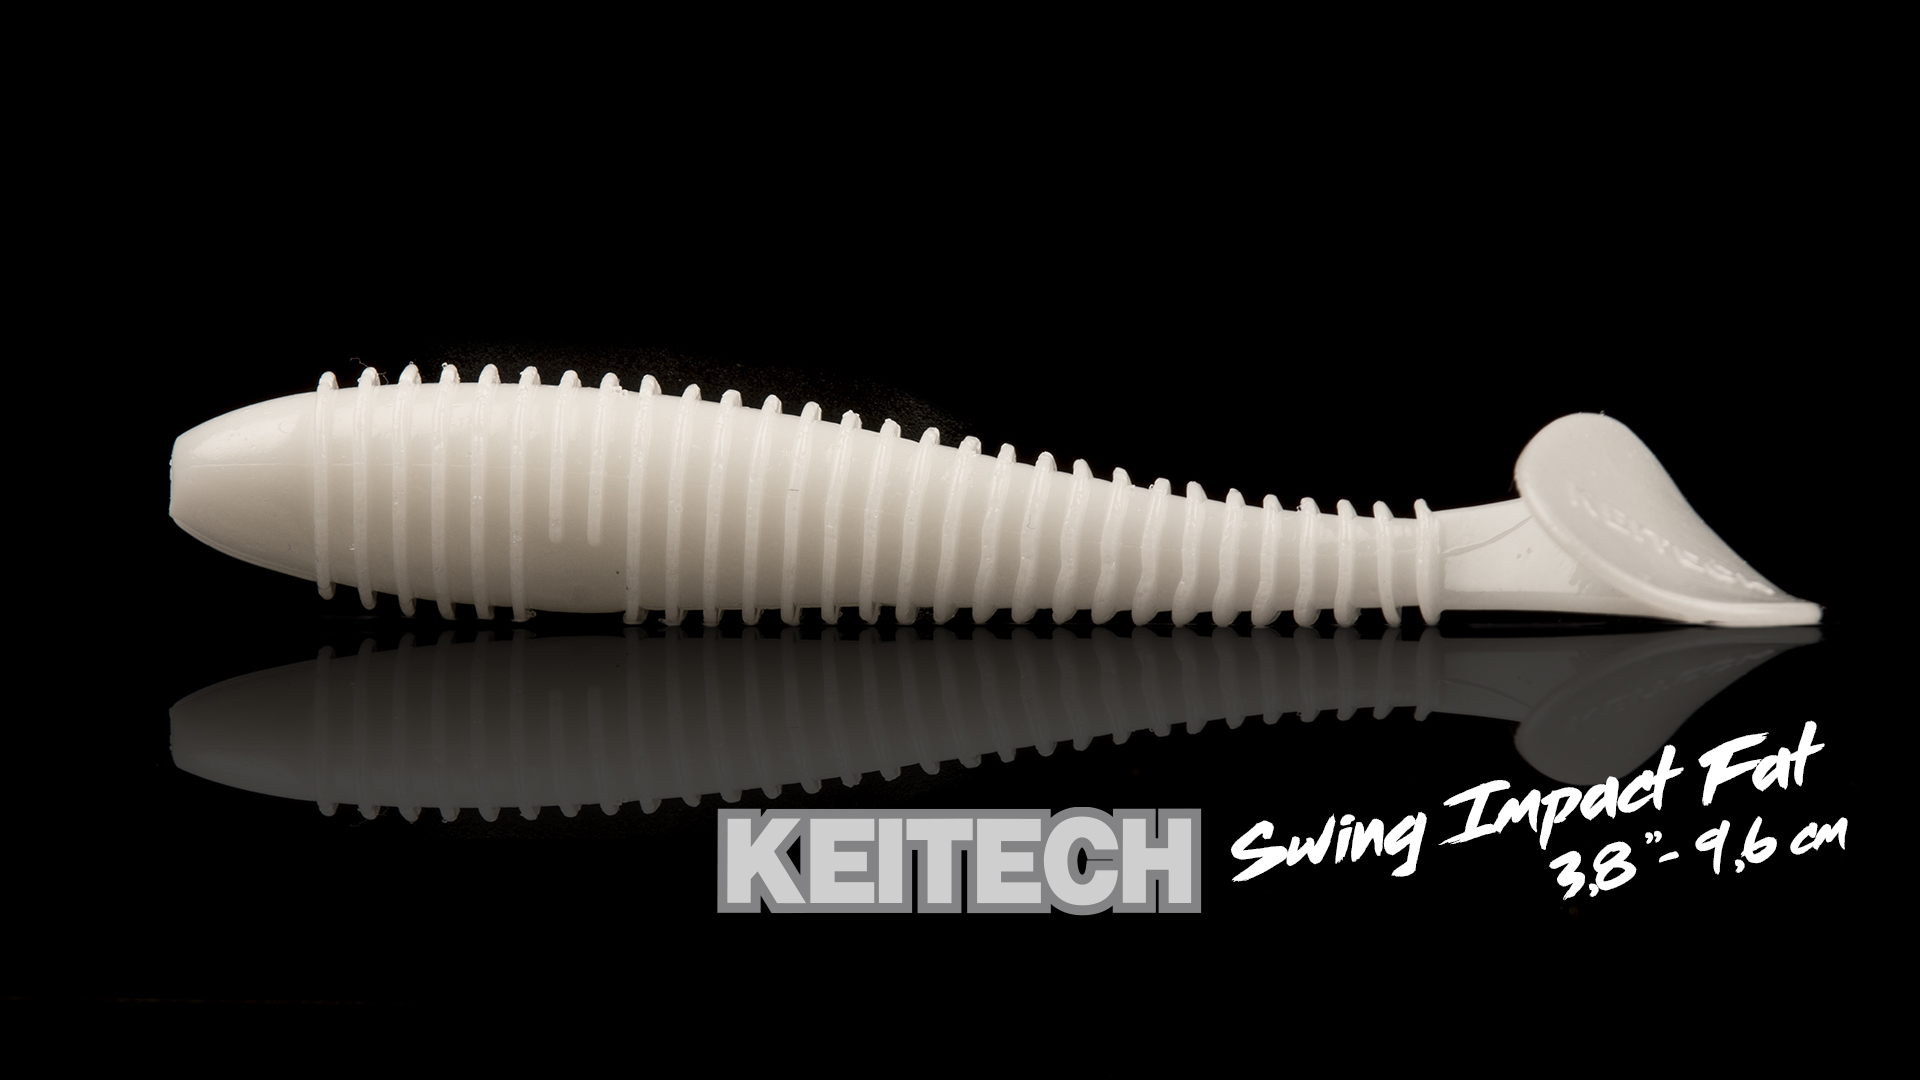 Acheter Leurre Souple pour la Peche Keitech Swing Impact Fat 3.8